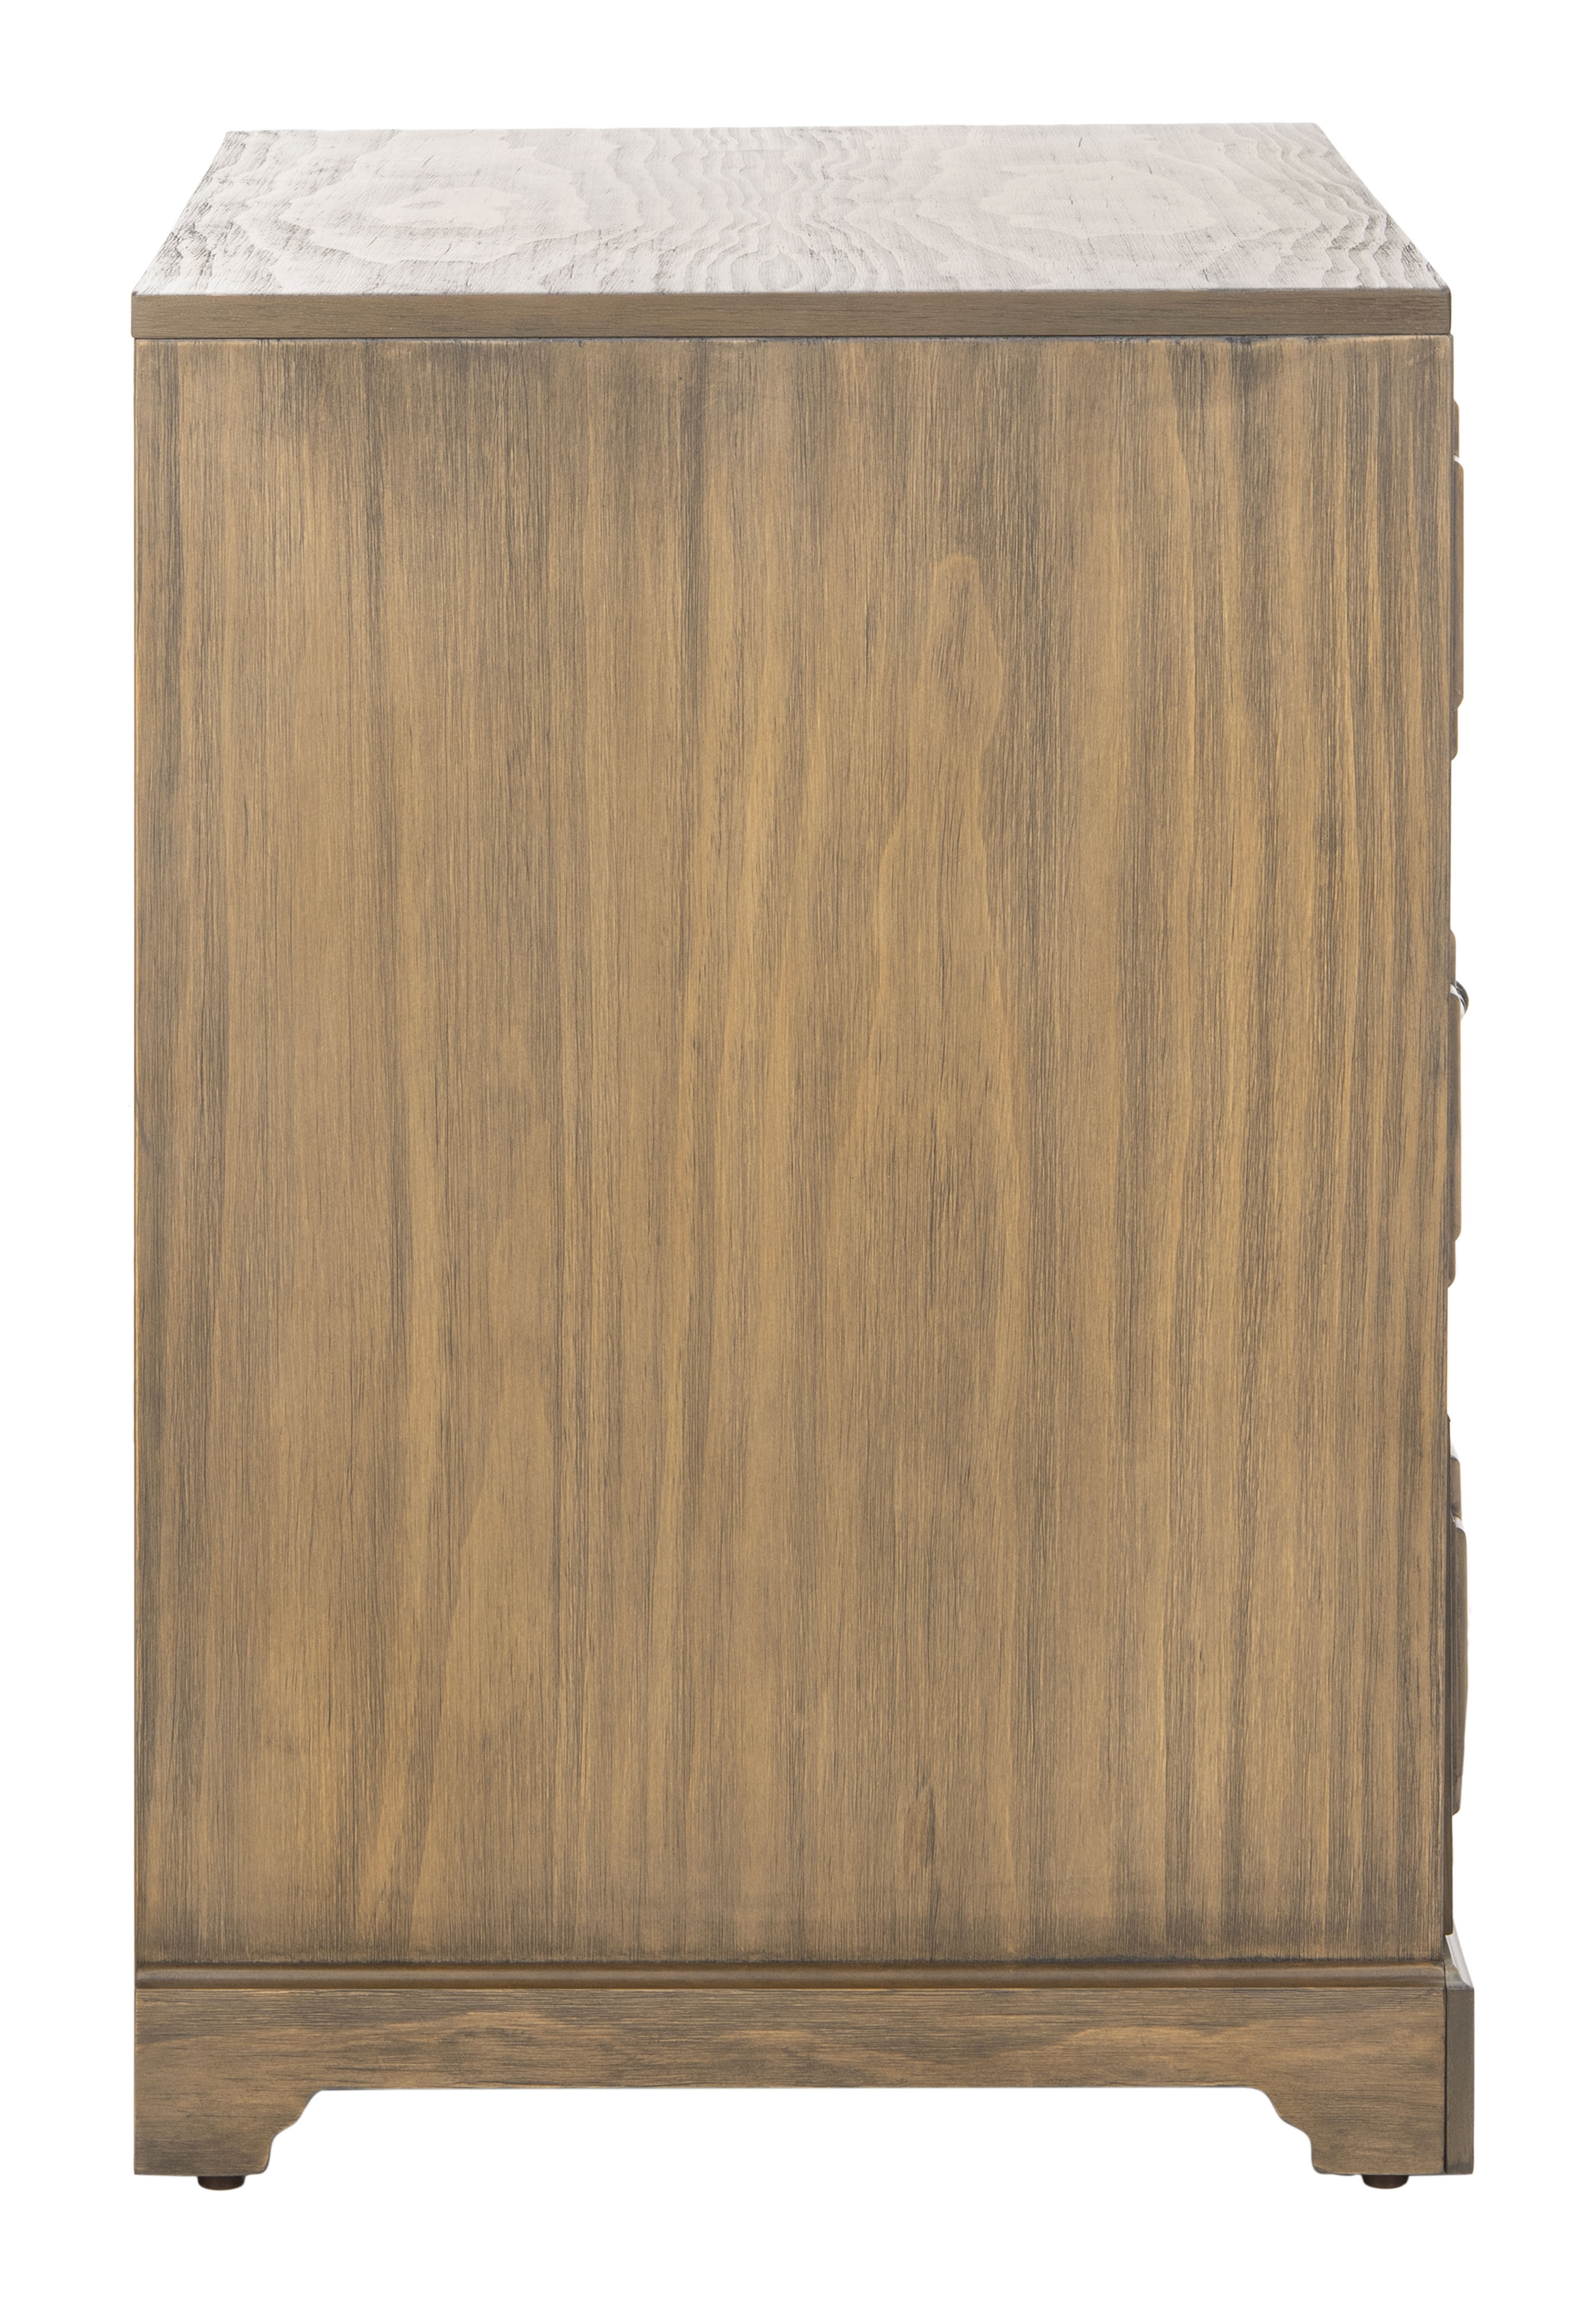 Leighton 3 Drawer Nightstand - Weathered Oak - Arlo Home - Image 1